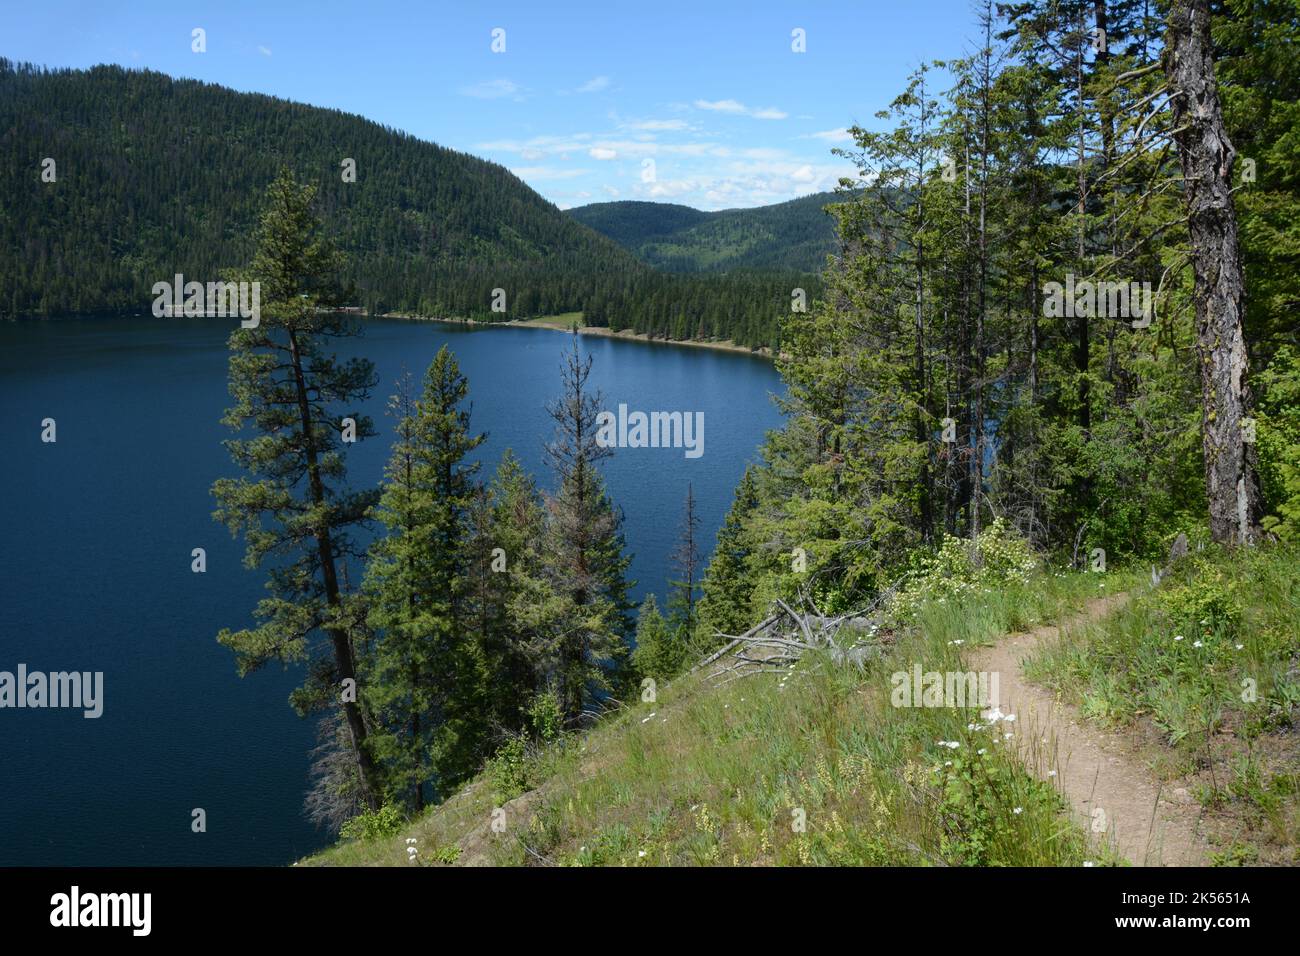 Vue sur le lac Sullivan, depuis un sentier de randonnée au-dessus du rivage, dans les montagnes Selkirk de la forêt nationale de Colville, État de Washington, États-Unis. Banque D'Images